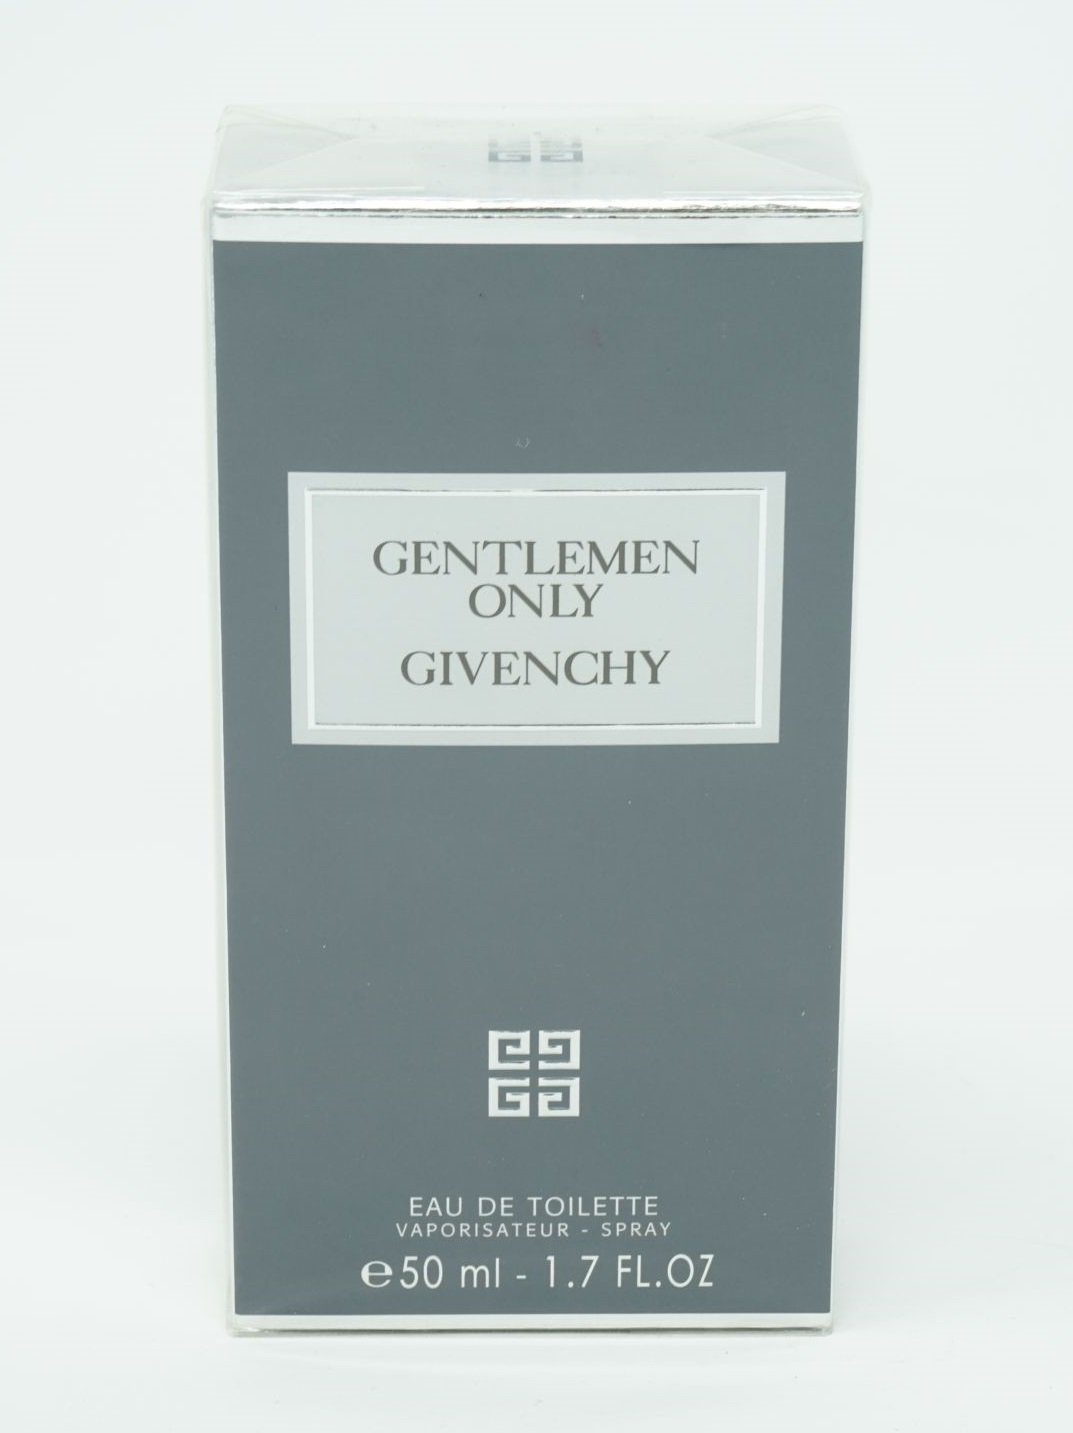 Eau de de Eau GIVENCHY Spray Toilette Givenchy 50ml Gentlemen Toilette Only